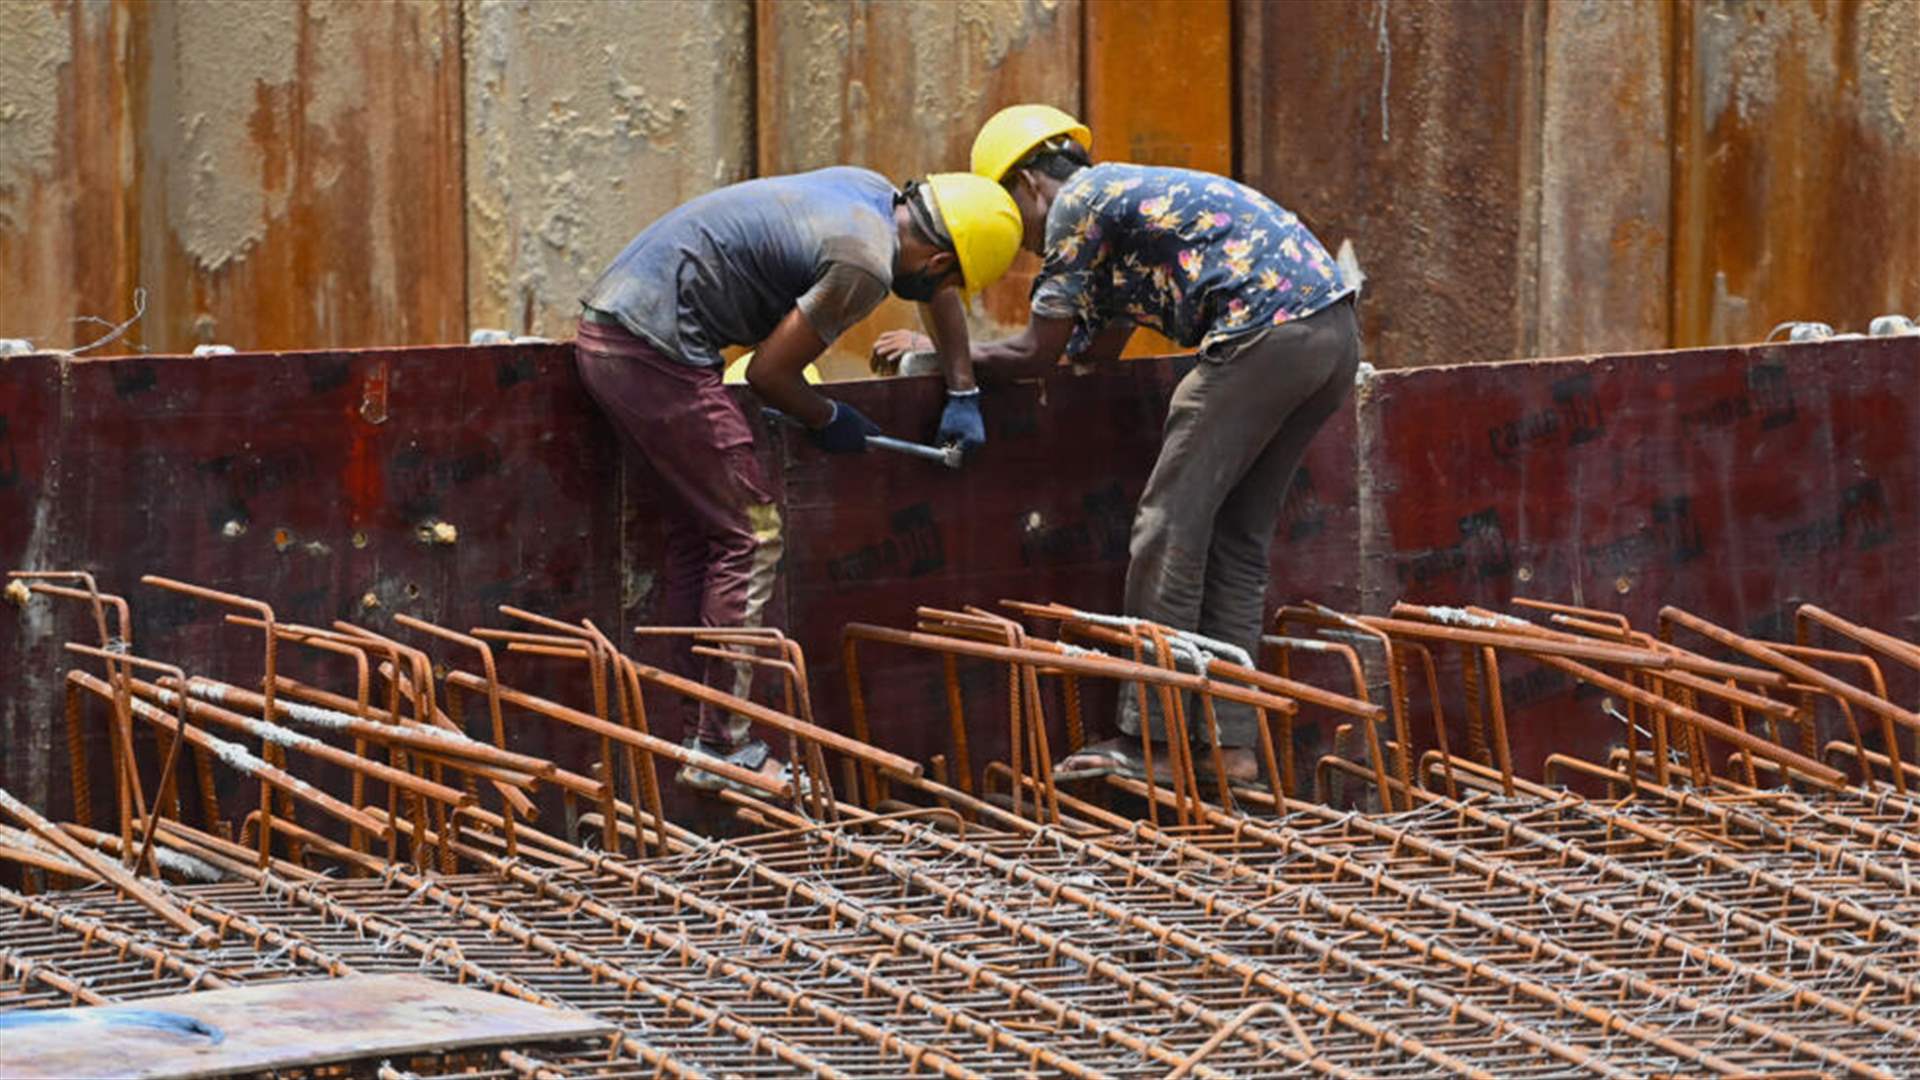  إسرائيل تعمل على استقدام  عمال أجانب لدعم قطاع البناء